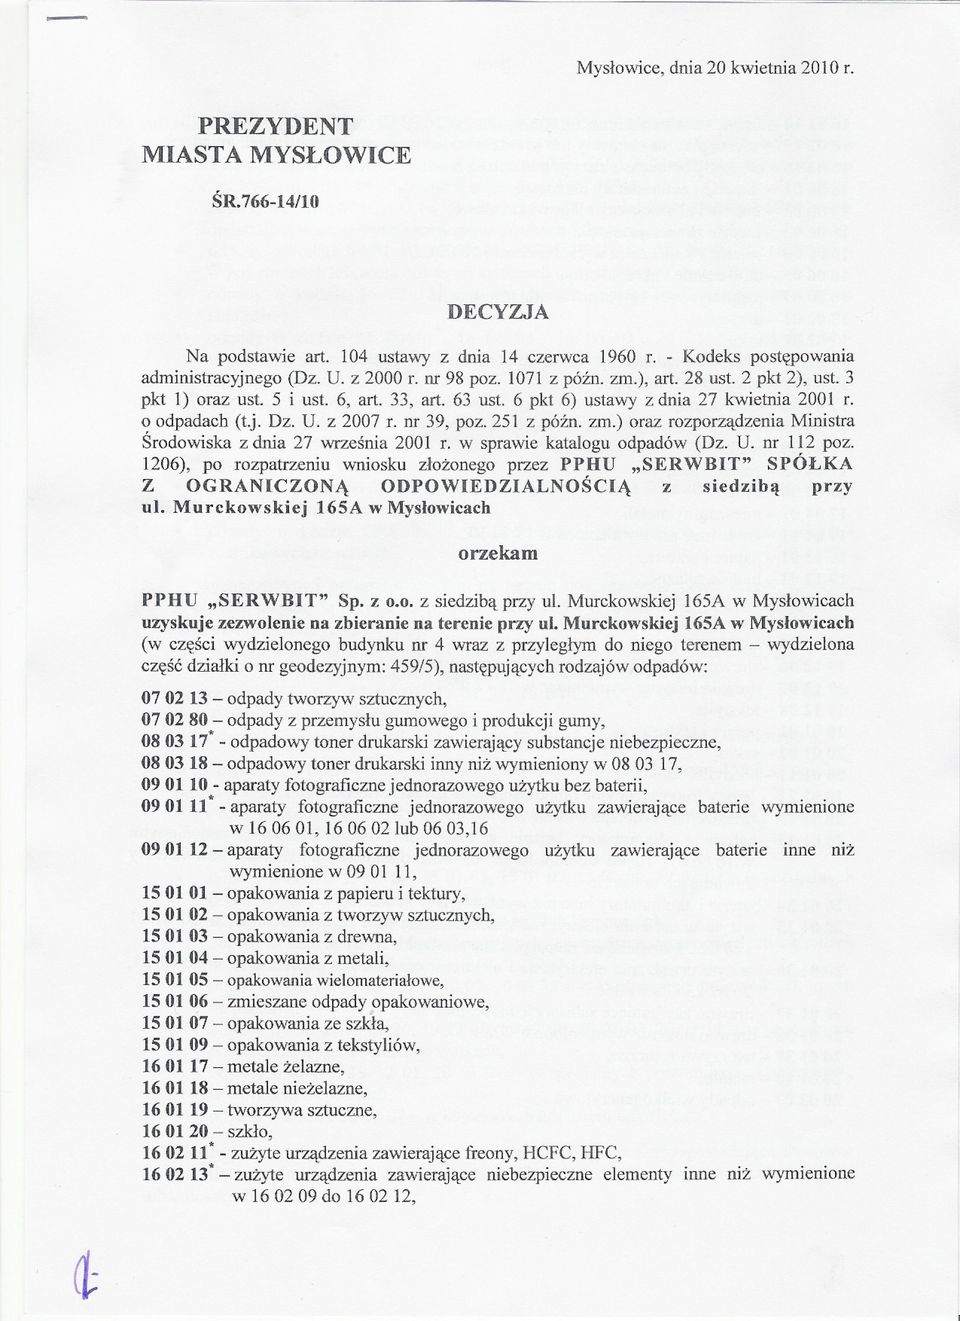 251 z póznozm.) oraz rozporzadzenia Ministra Srodowiska z dnia 27 wrzesnia 2001 r. w sprawie katalogu odpadów (Dz. U. nr 112 poz.